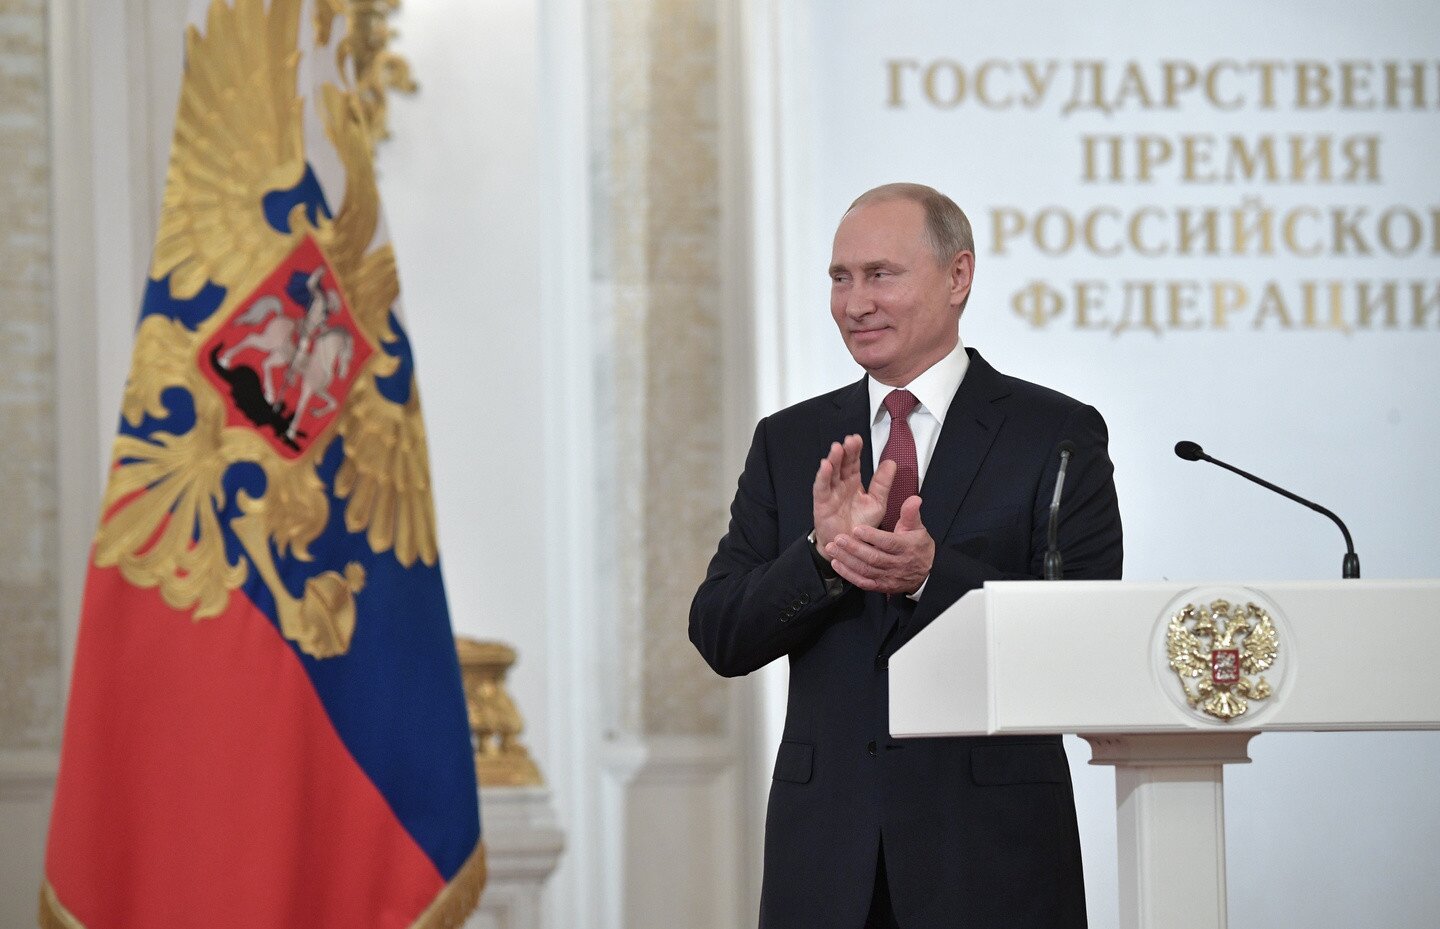 Путин поднял тост за великую Россию и назвал качества, присущие национальному характеру, - кадры